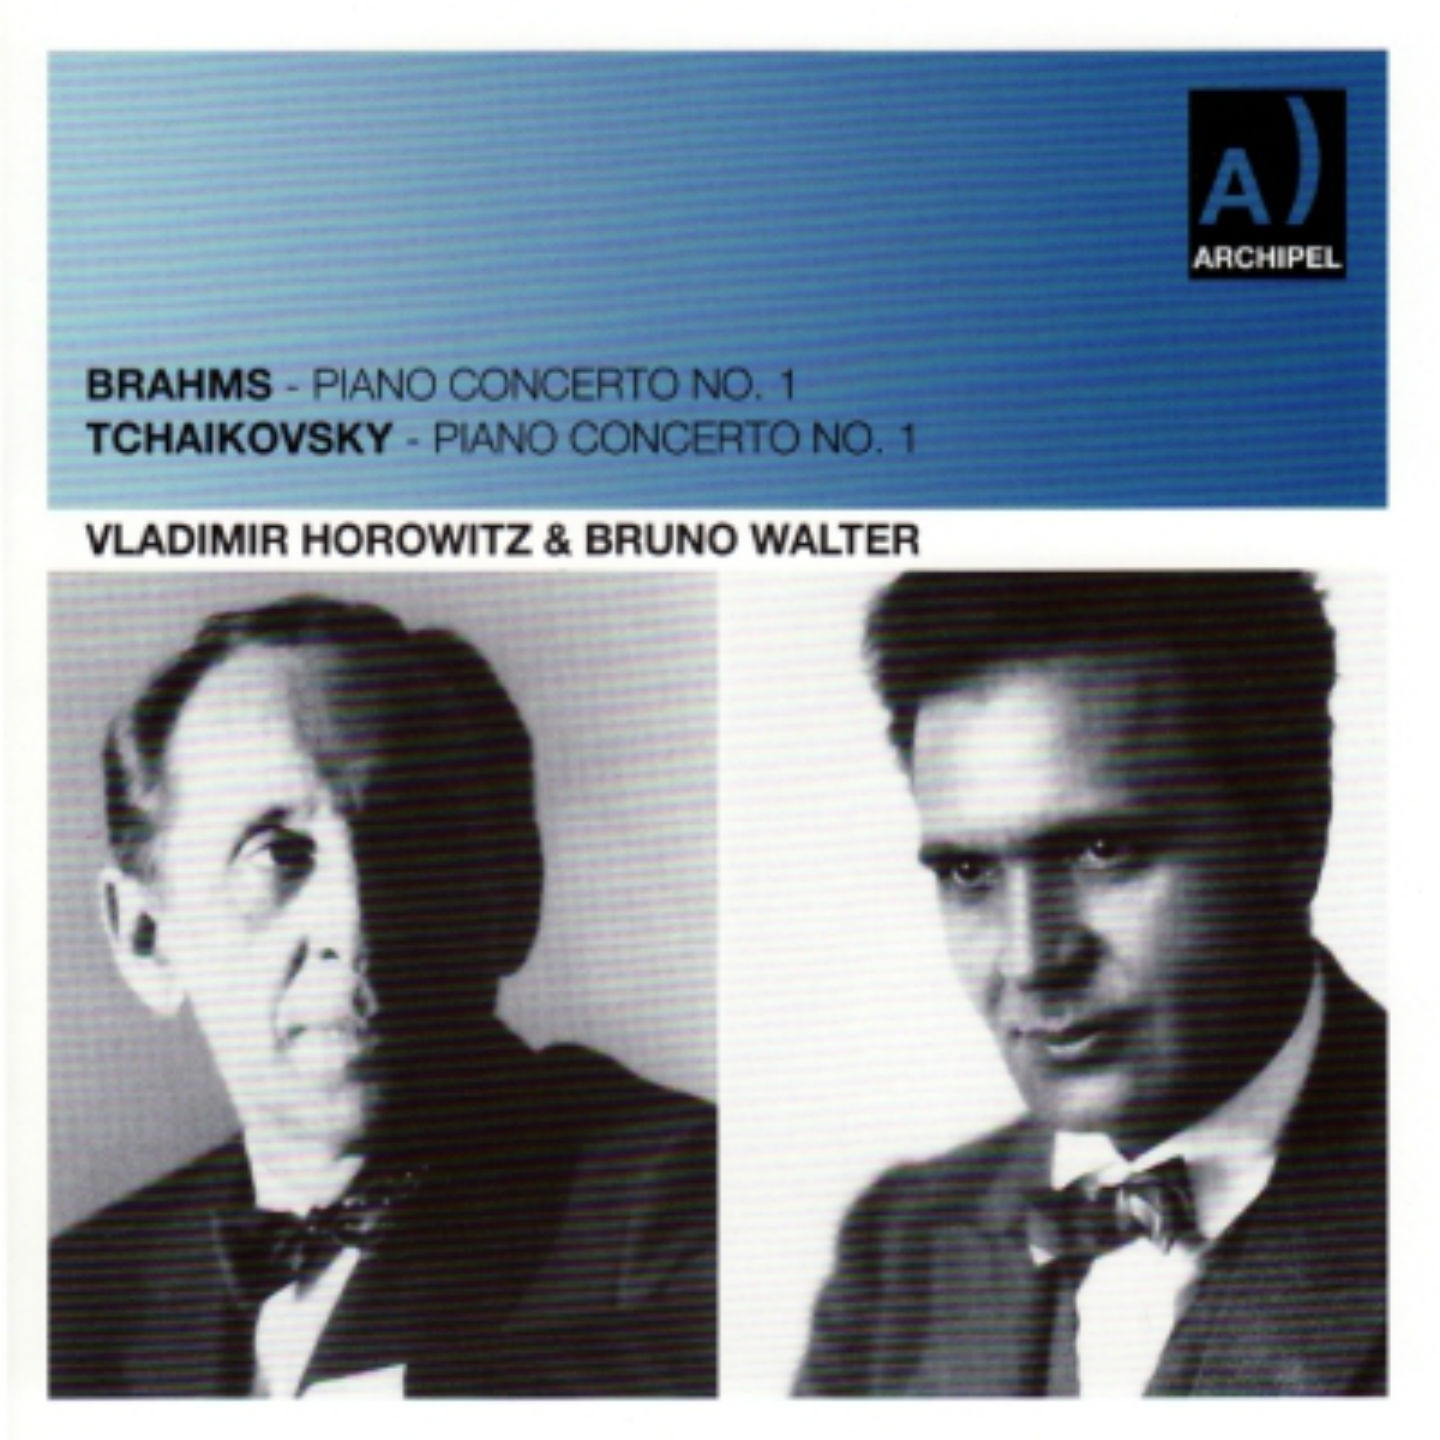 Brahms: Piano Concerto No. 1 - Tchaikovsky: Piano Concerto No. 1